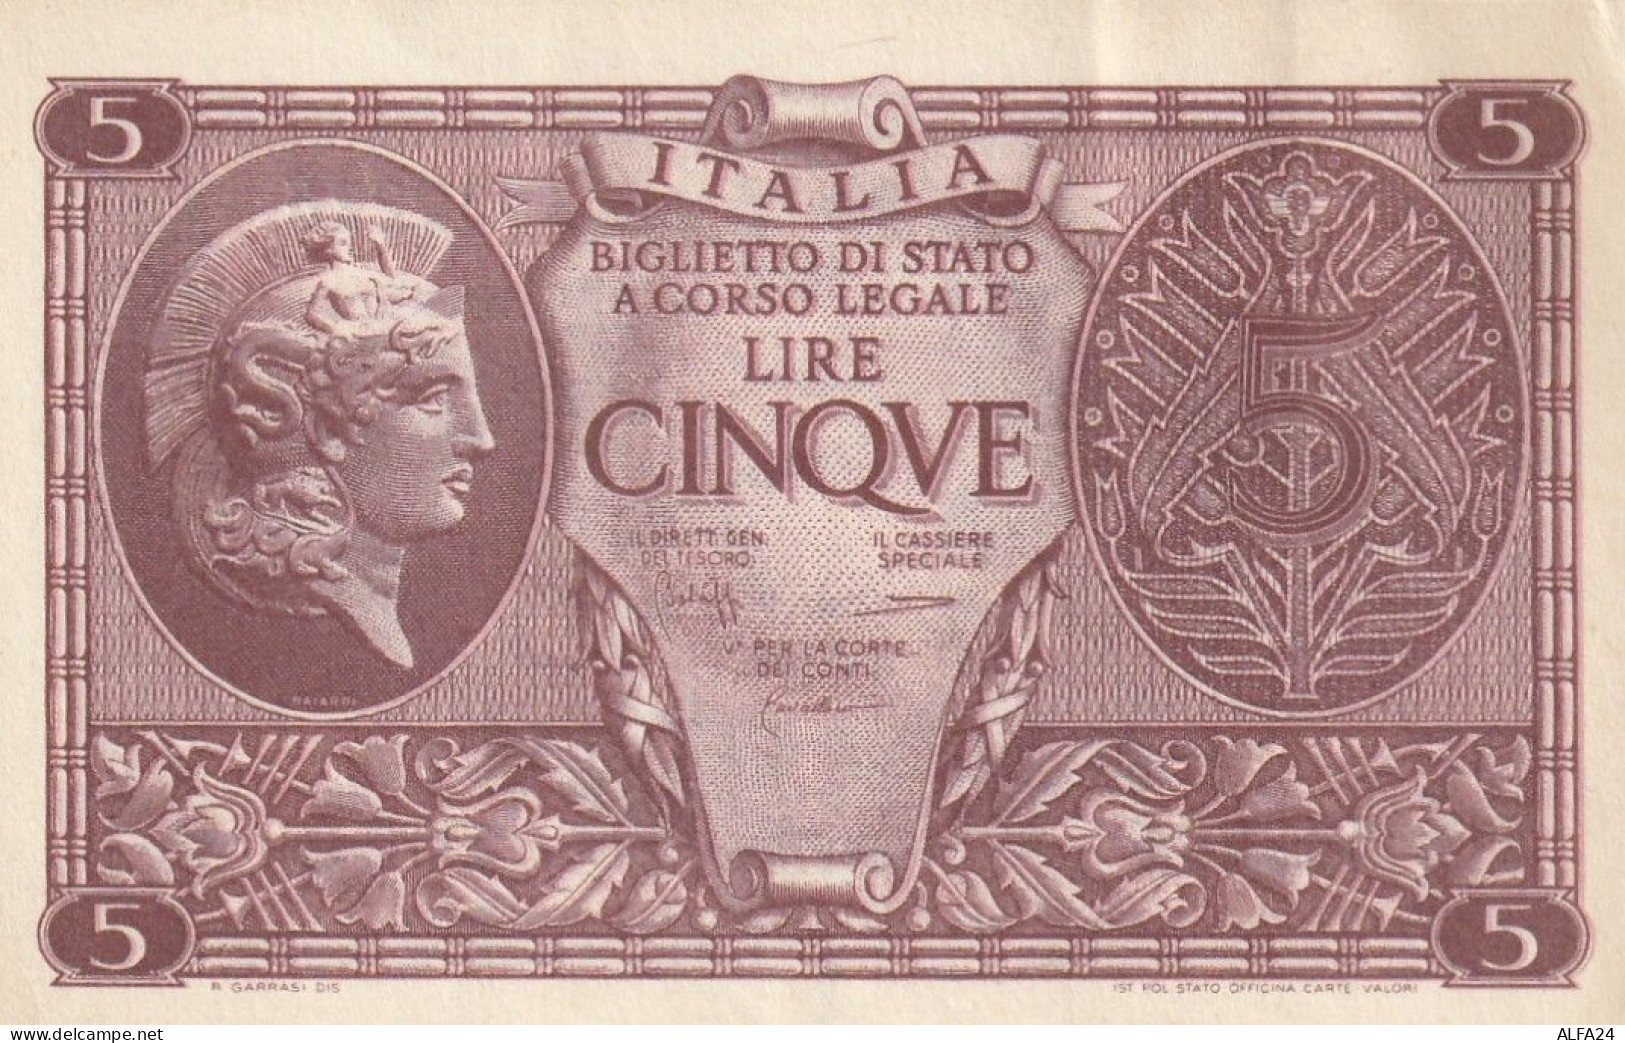 BANCONOTA ITALIA BIGLIETTO STATO 5 AUNC  (B_229 - Italia – 5 Lire